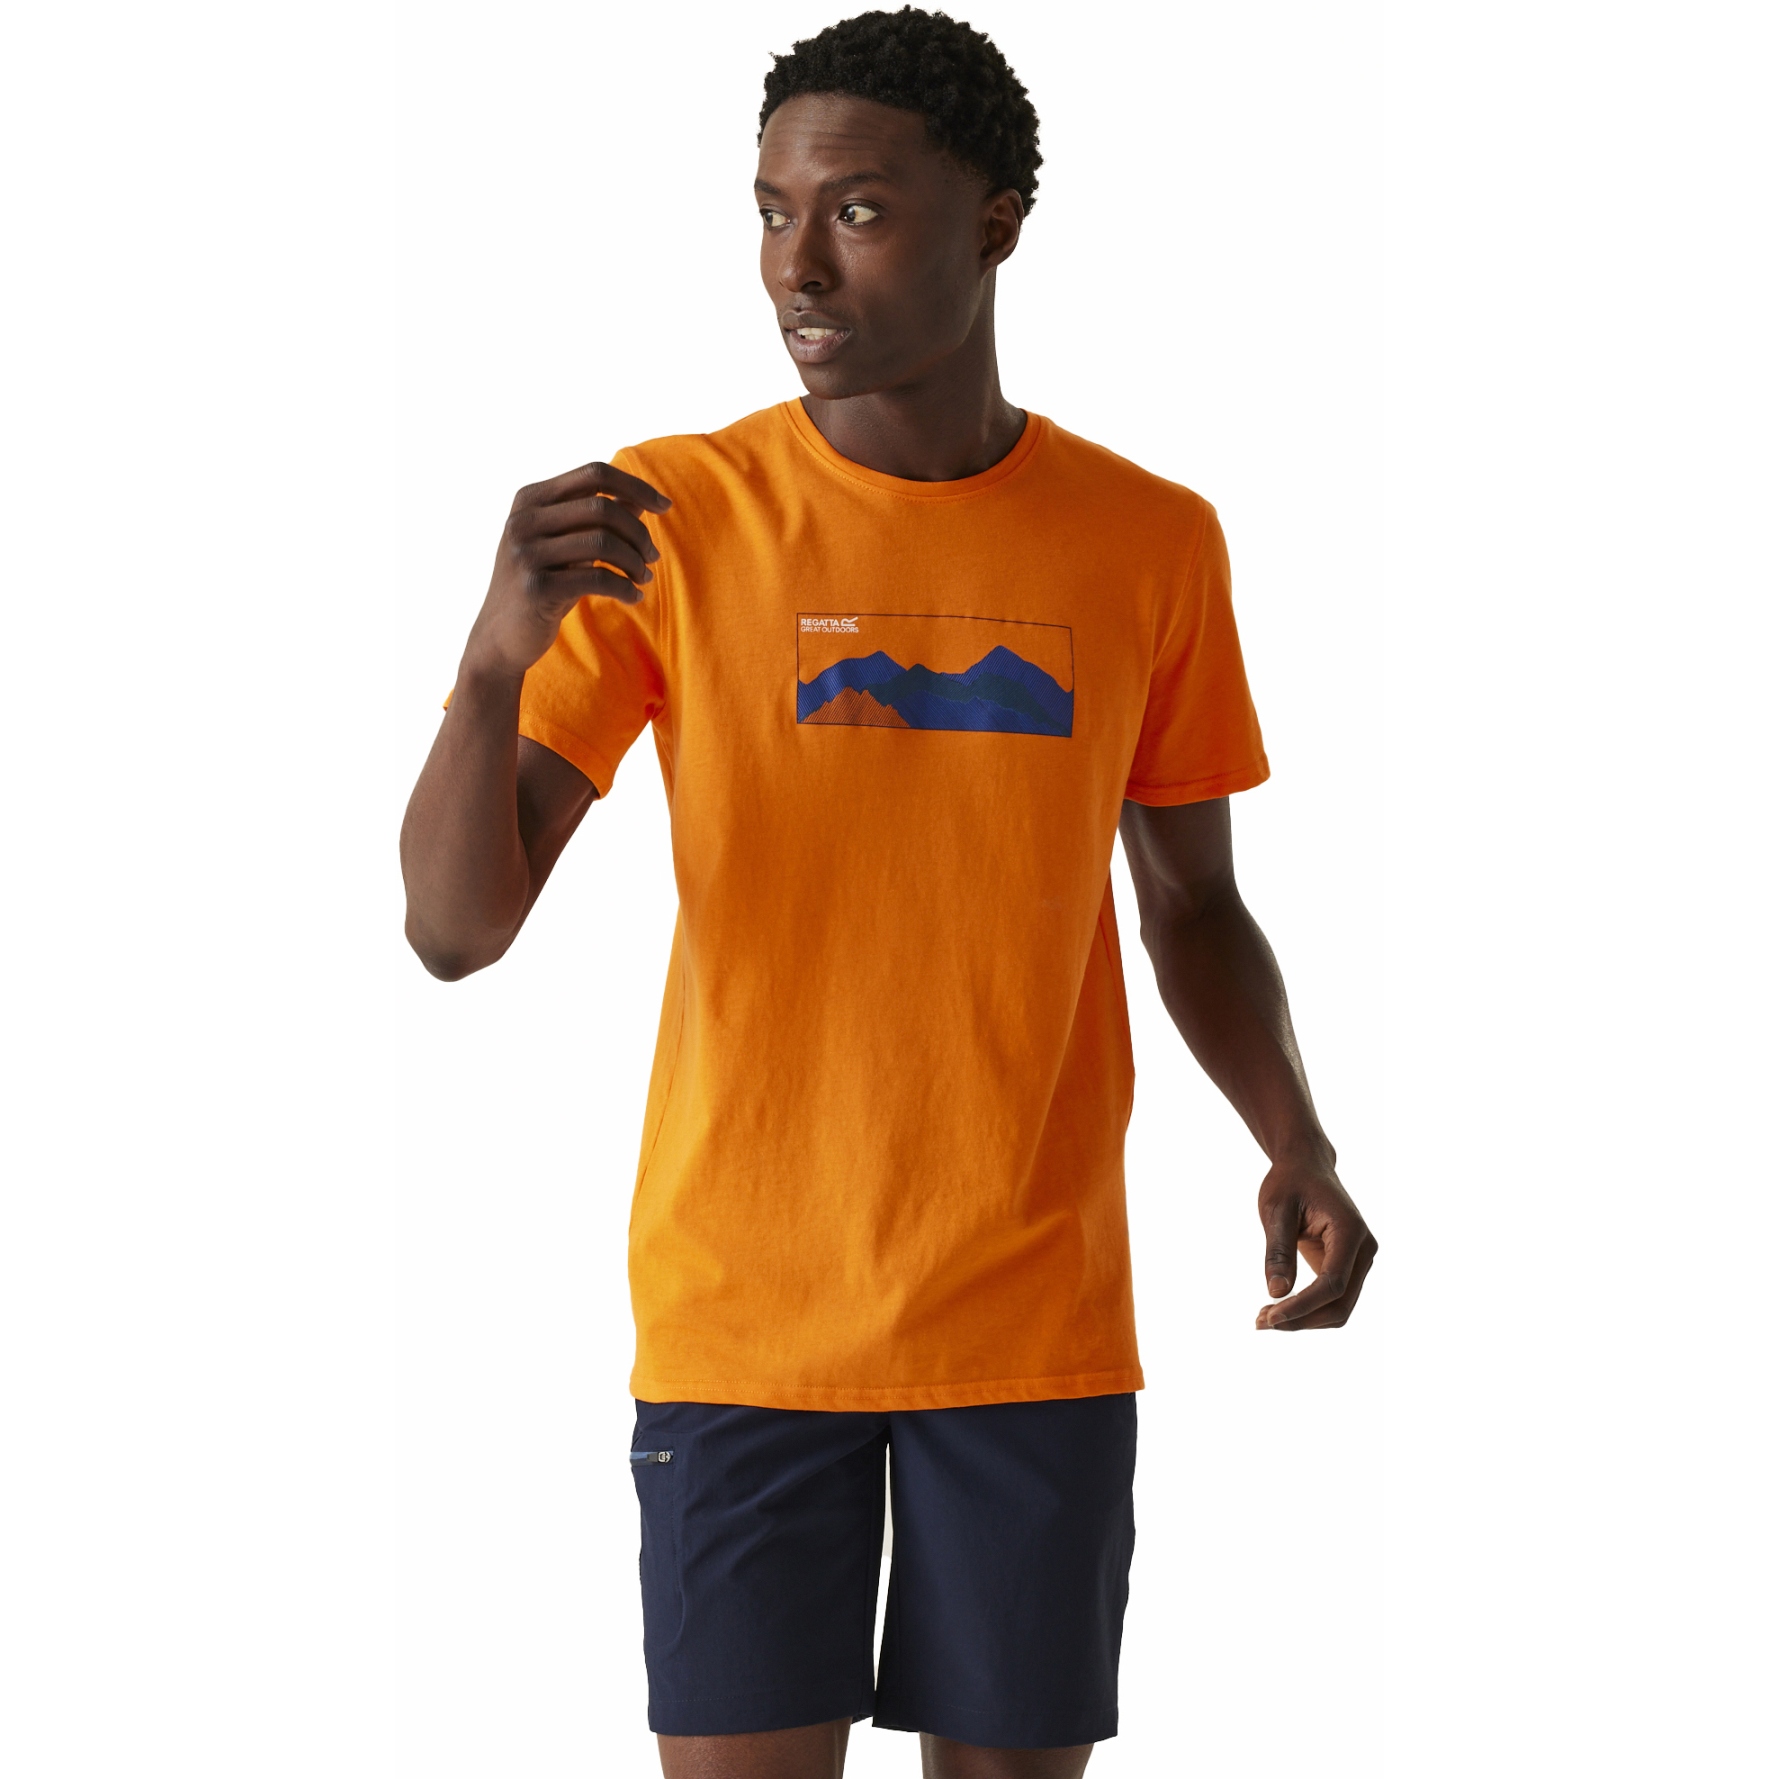 Produktbild von Regatta Breezed IV T-Shirt Herren - Persimmon 7JD